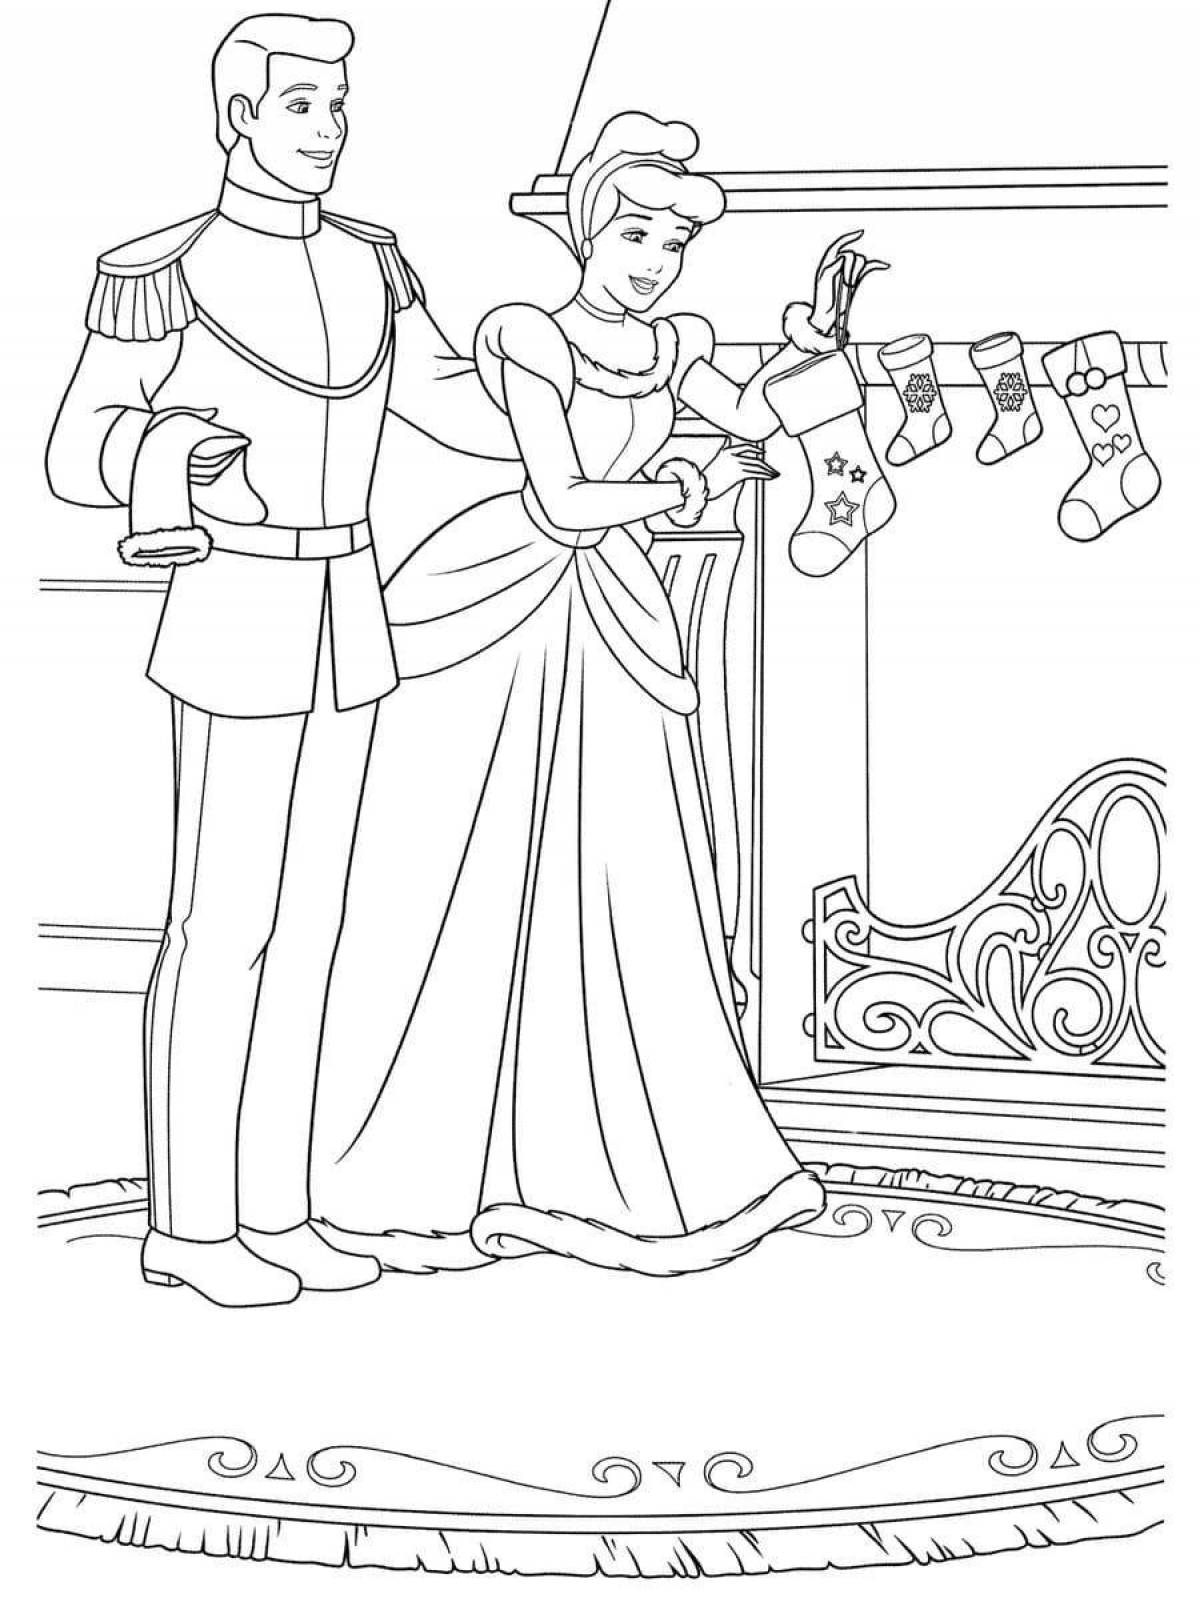 Joyful prince and princess coloring book